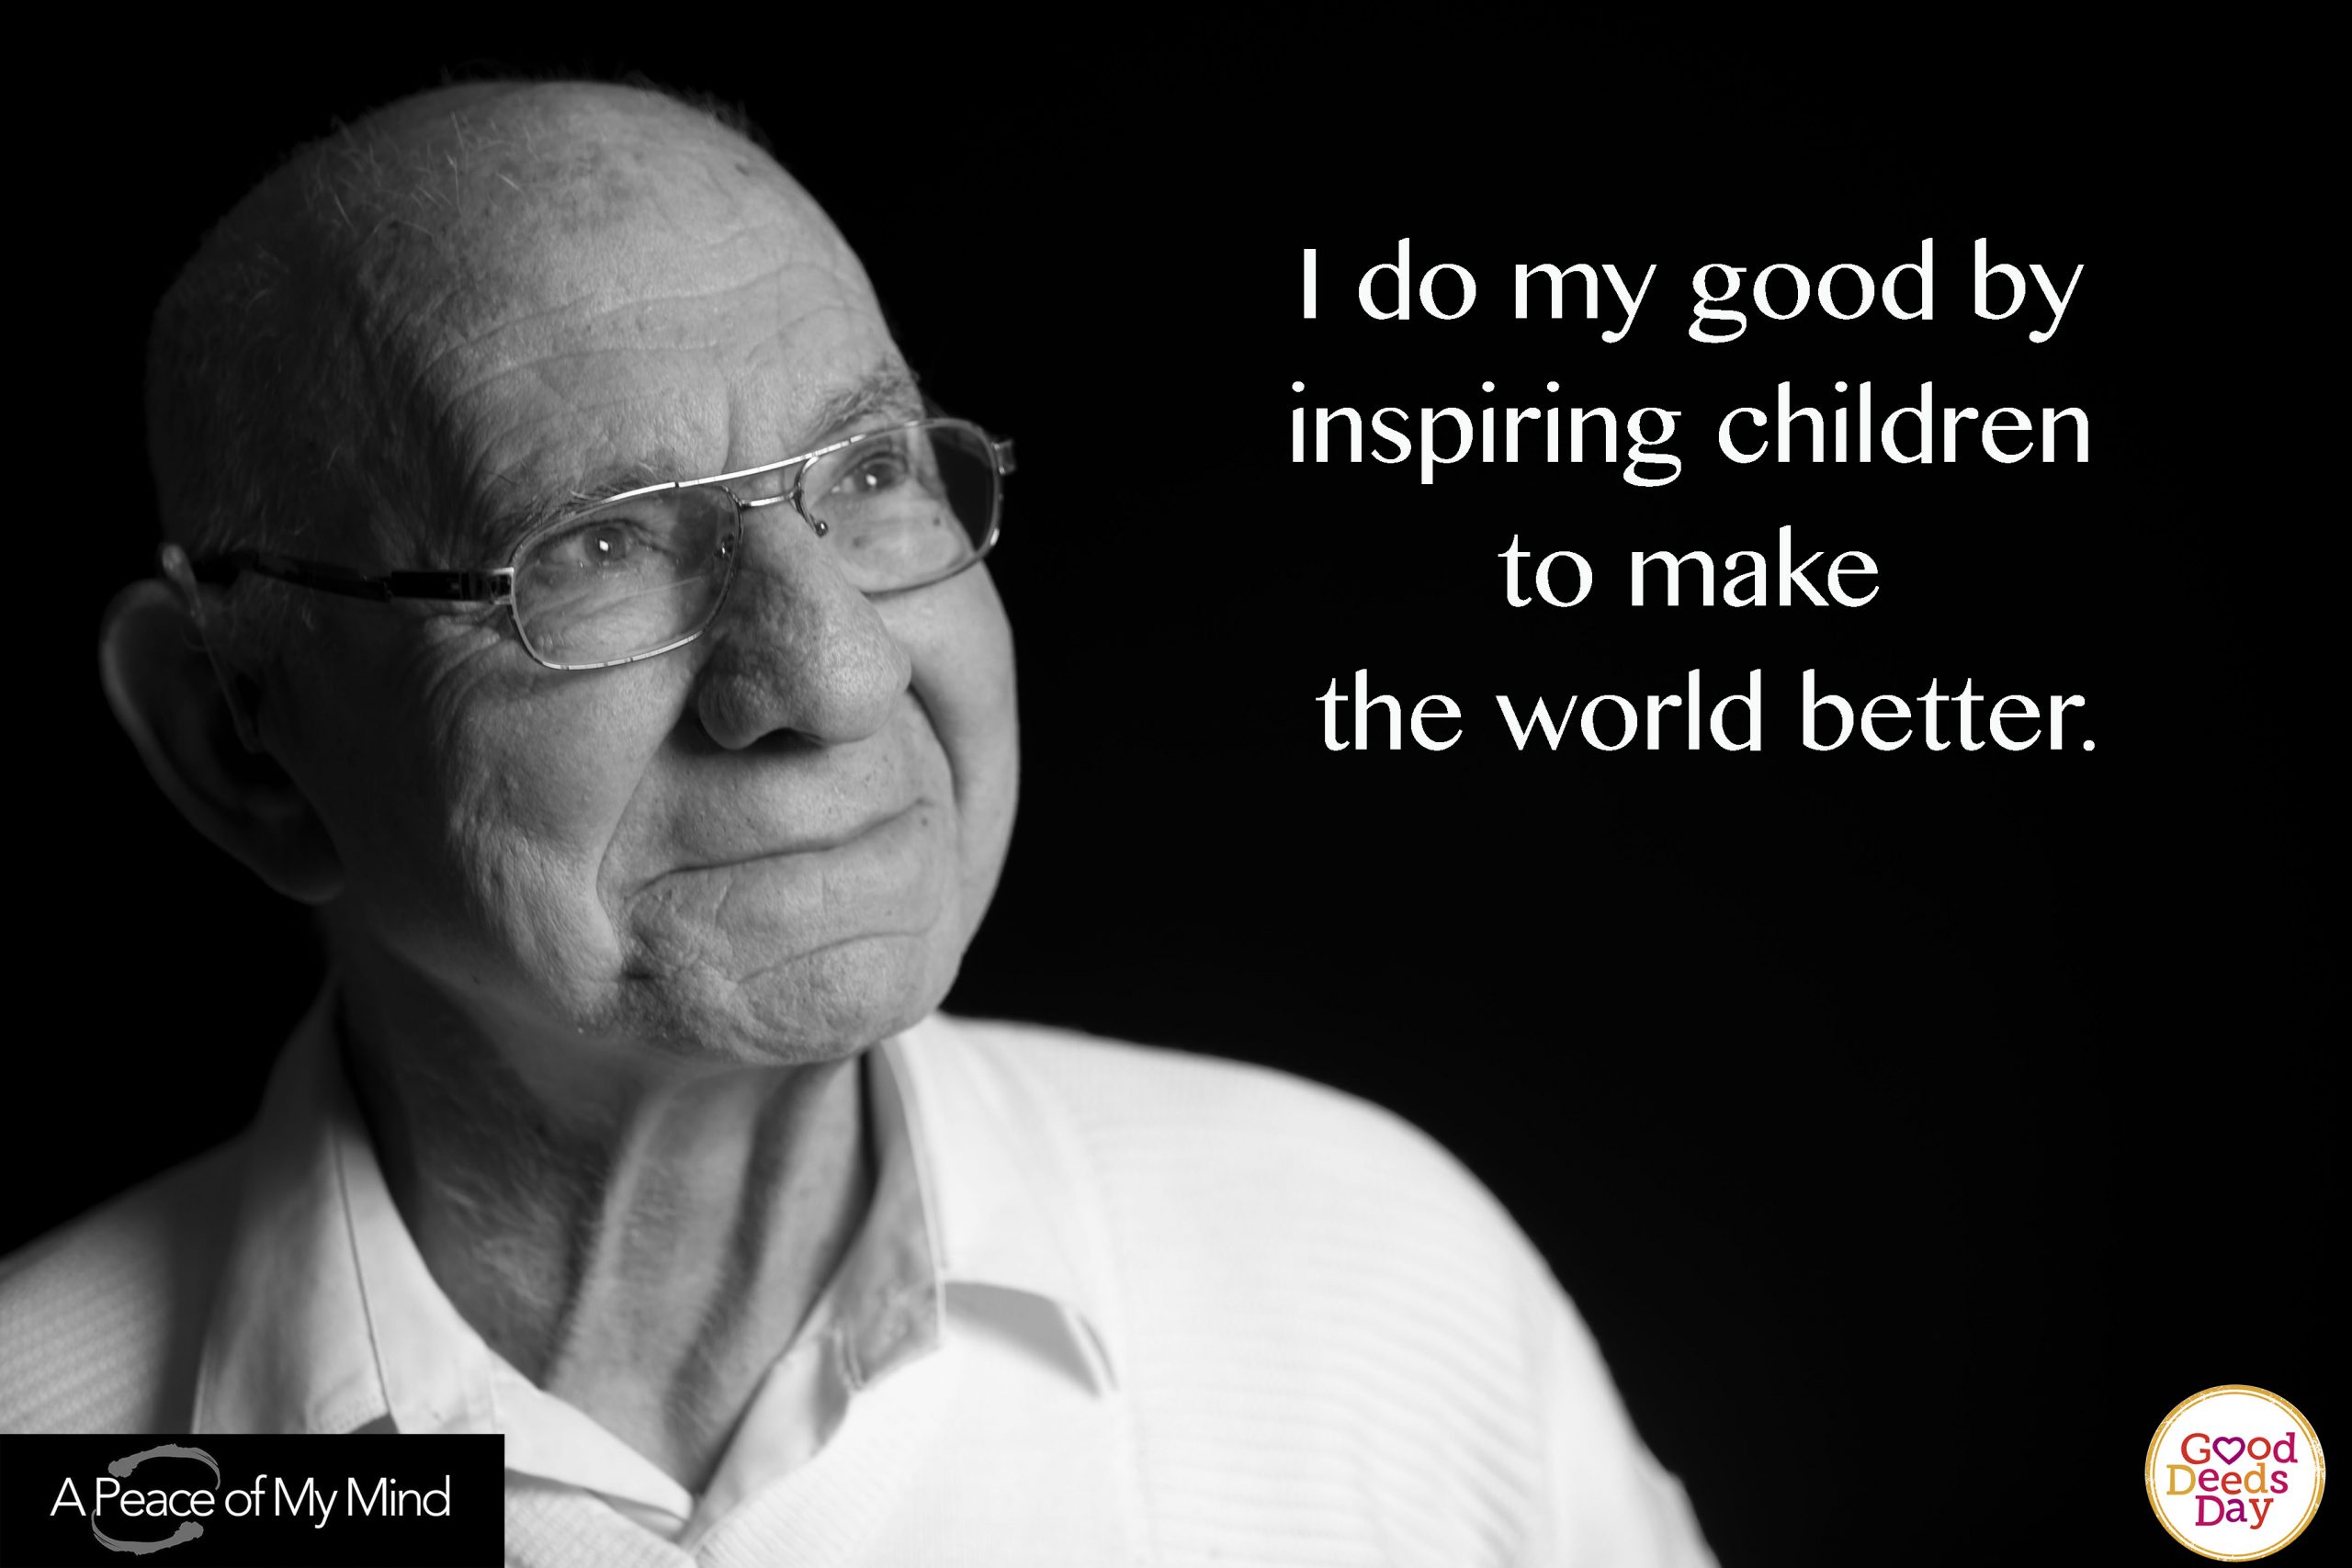 I do good by inspiring children to make the world better.